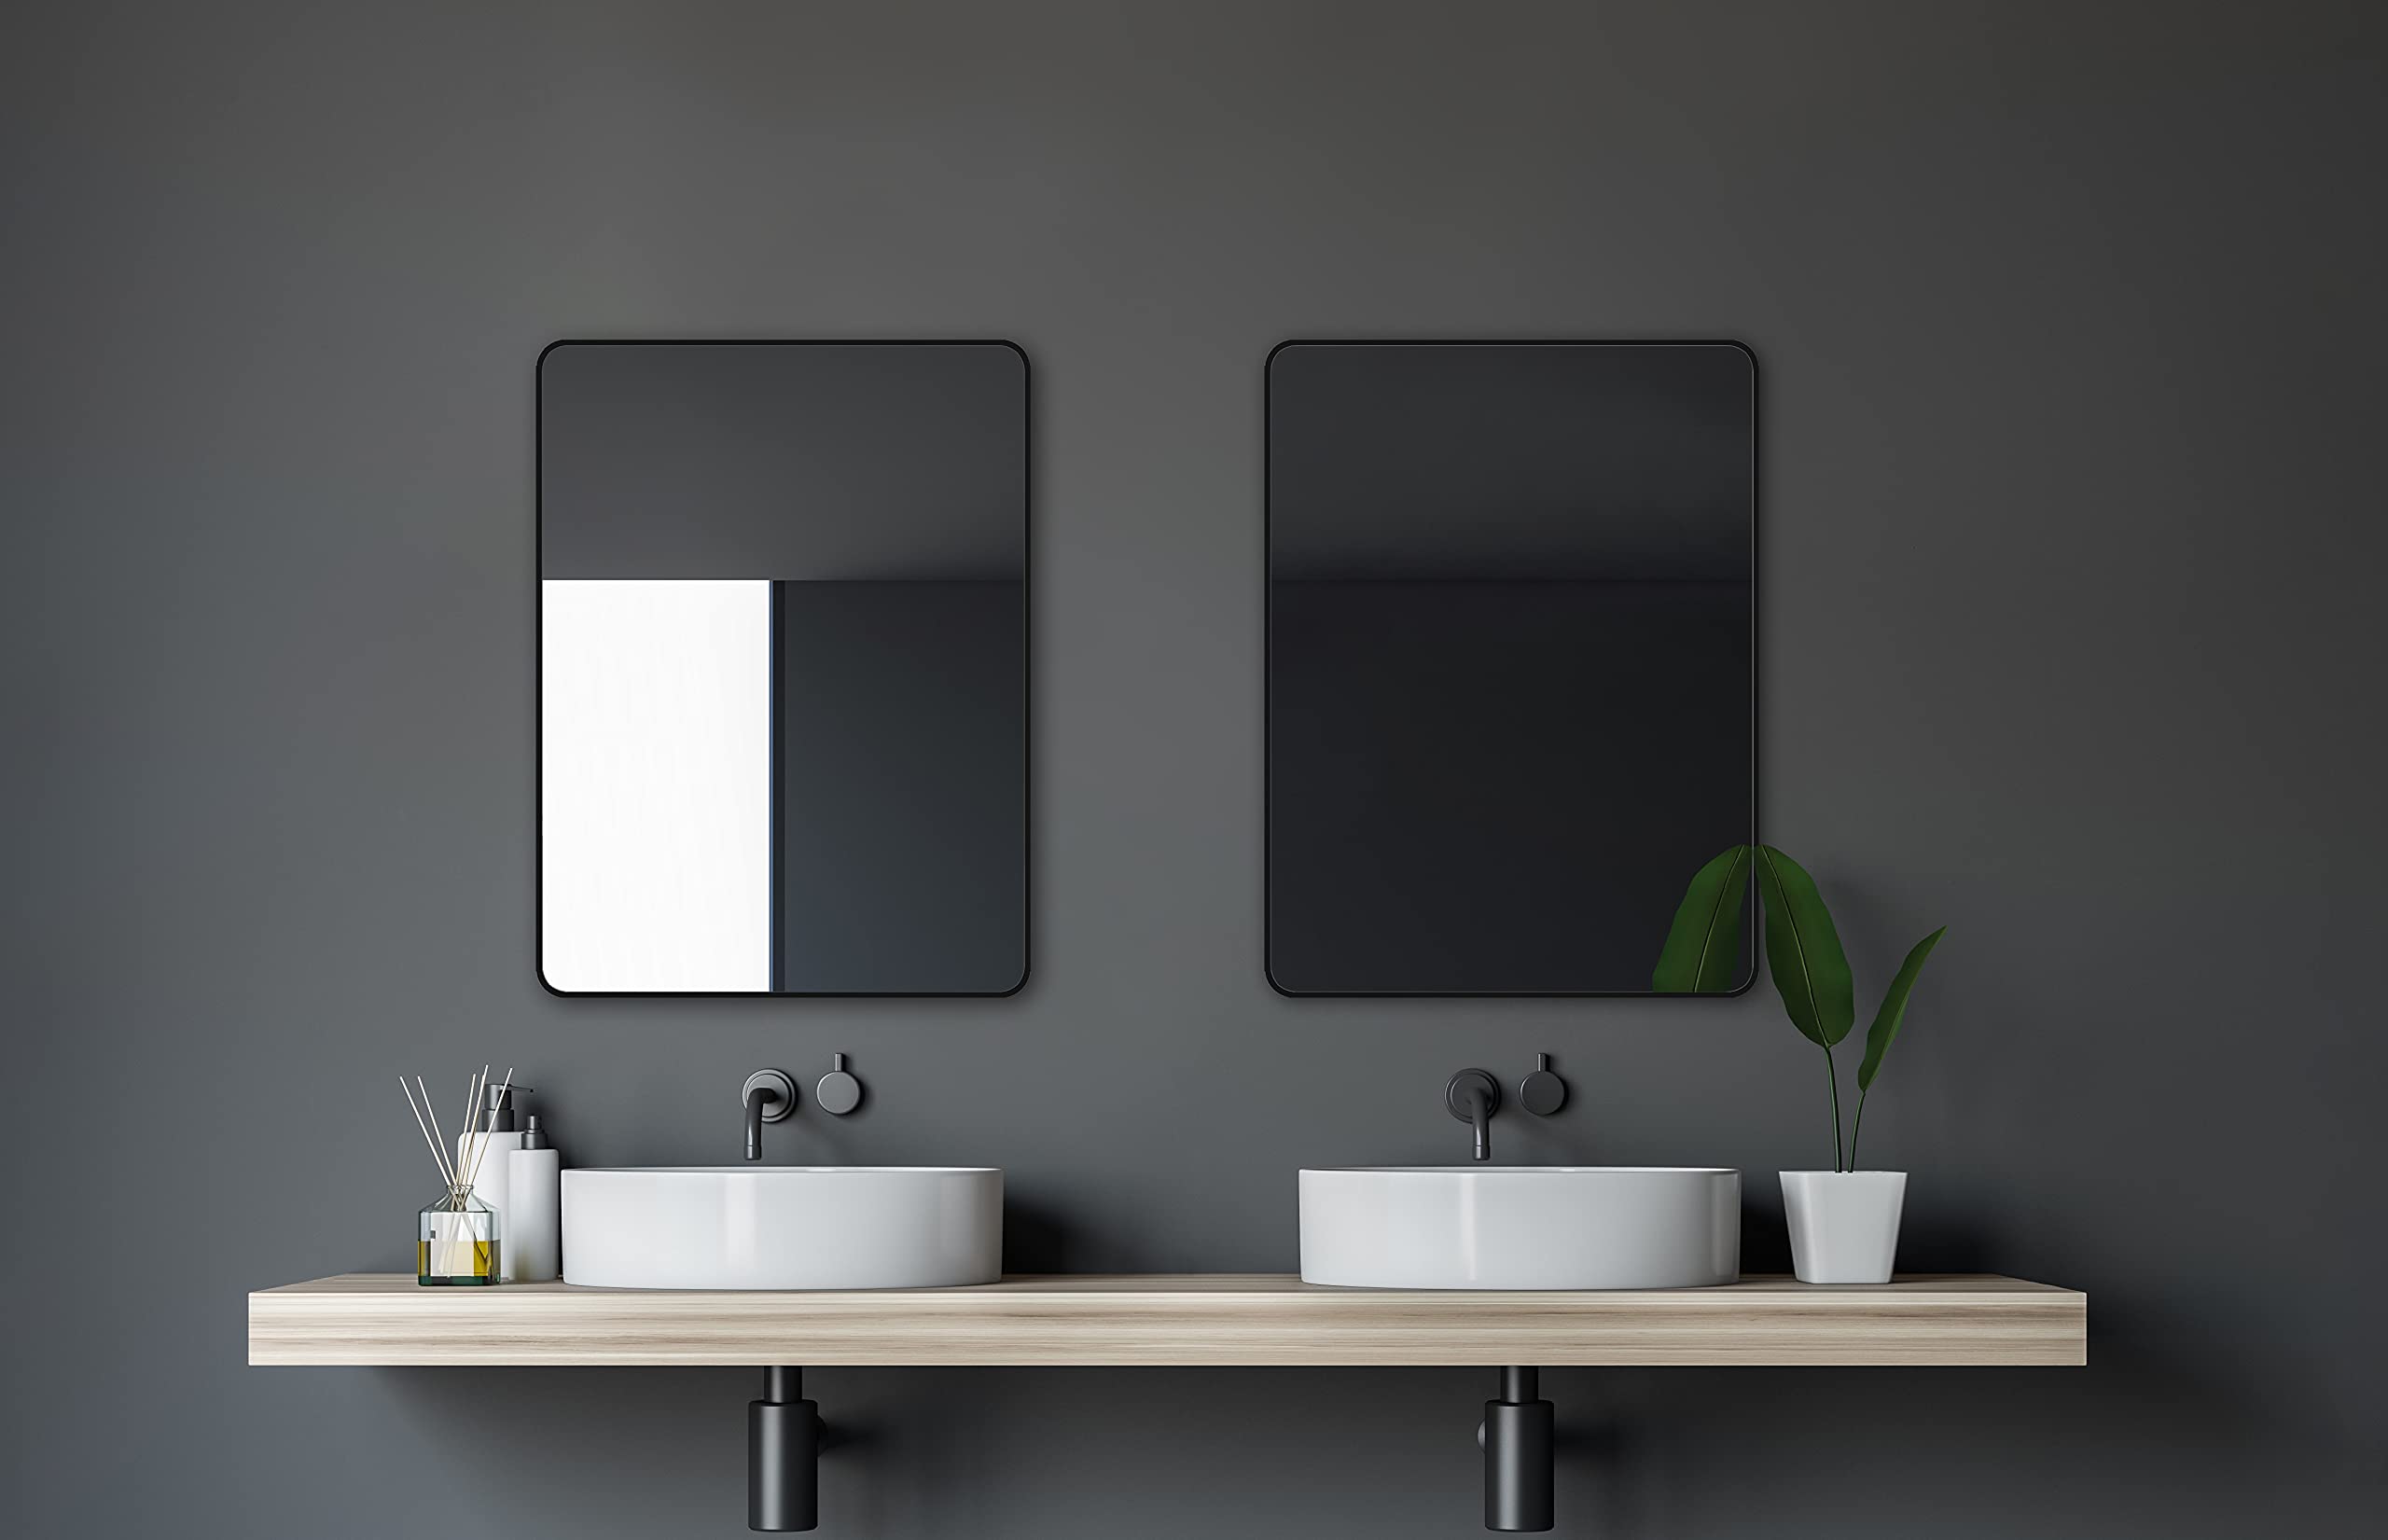 Talos Spiegel schwarz Black Living - Badspiegel schwarz in 80 x 60 cm und einem hochwertigen Aluminiumrahmen